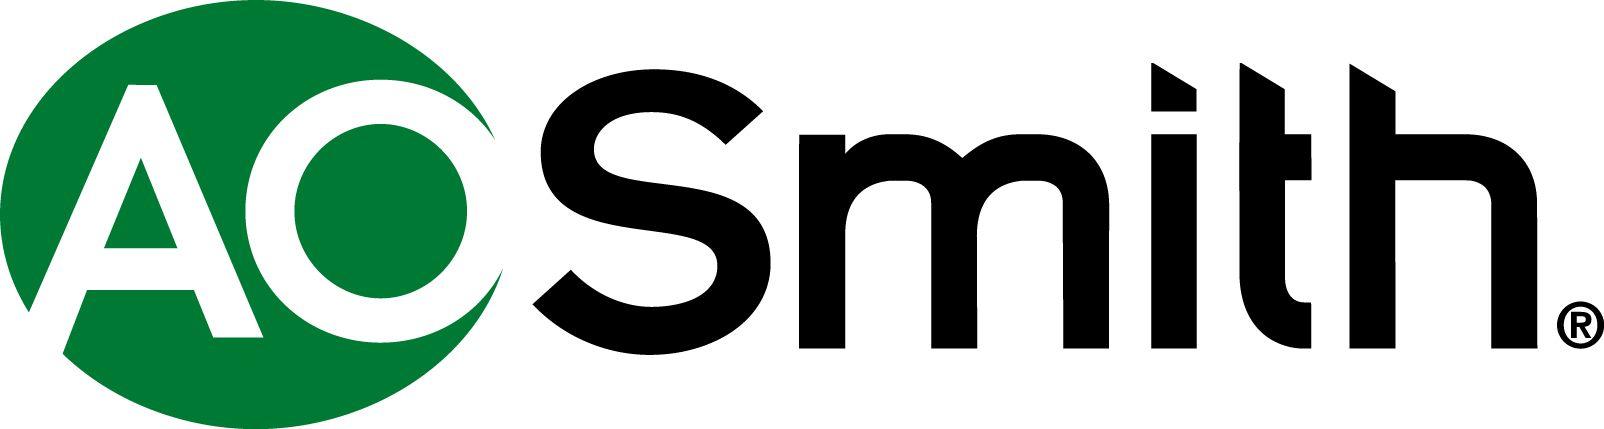 Grey Company Logo - Company Logos